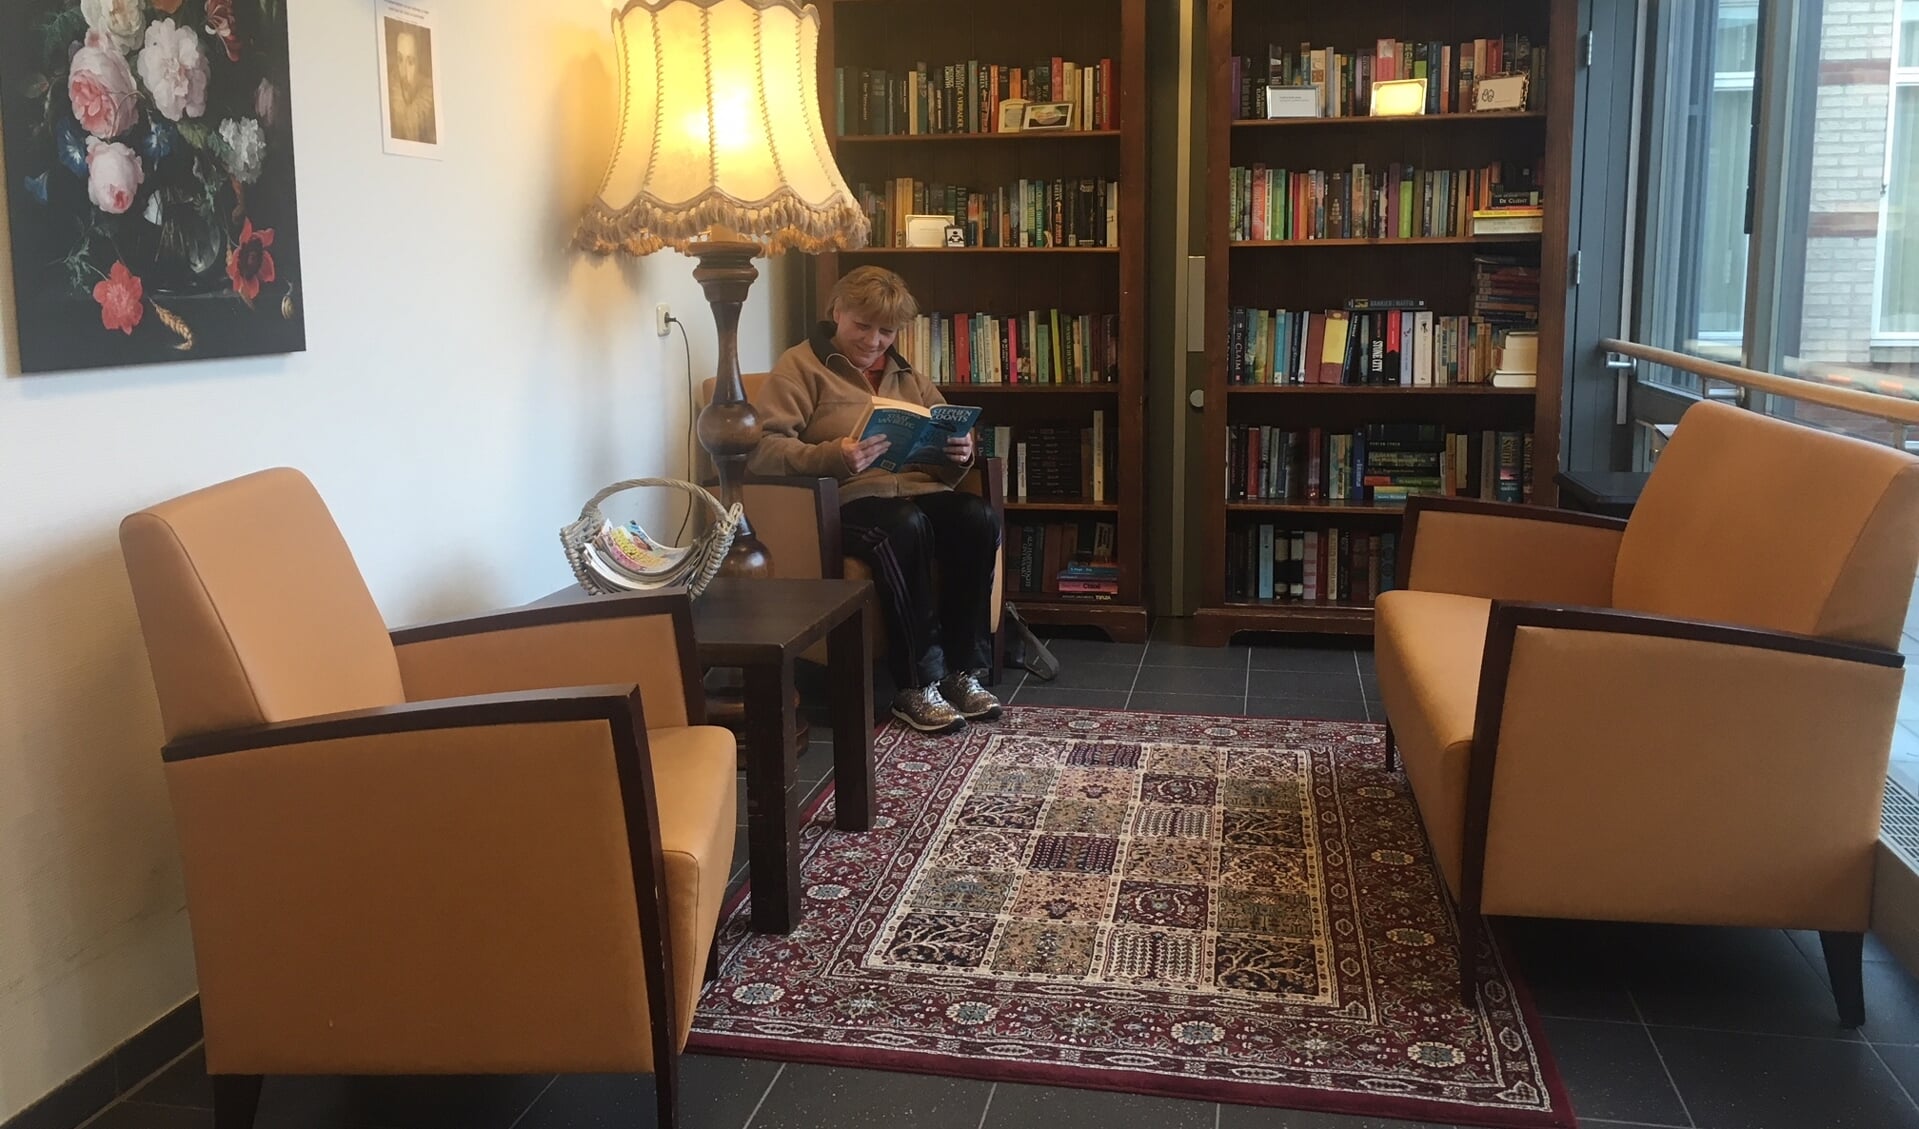 Een bezoekster van De Lingehof, die een boek leest in ons boeken-ruil-kast hoekje. (foto: Bianca)